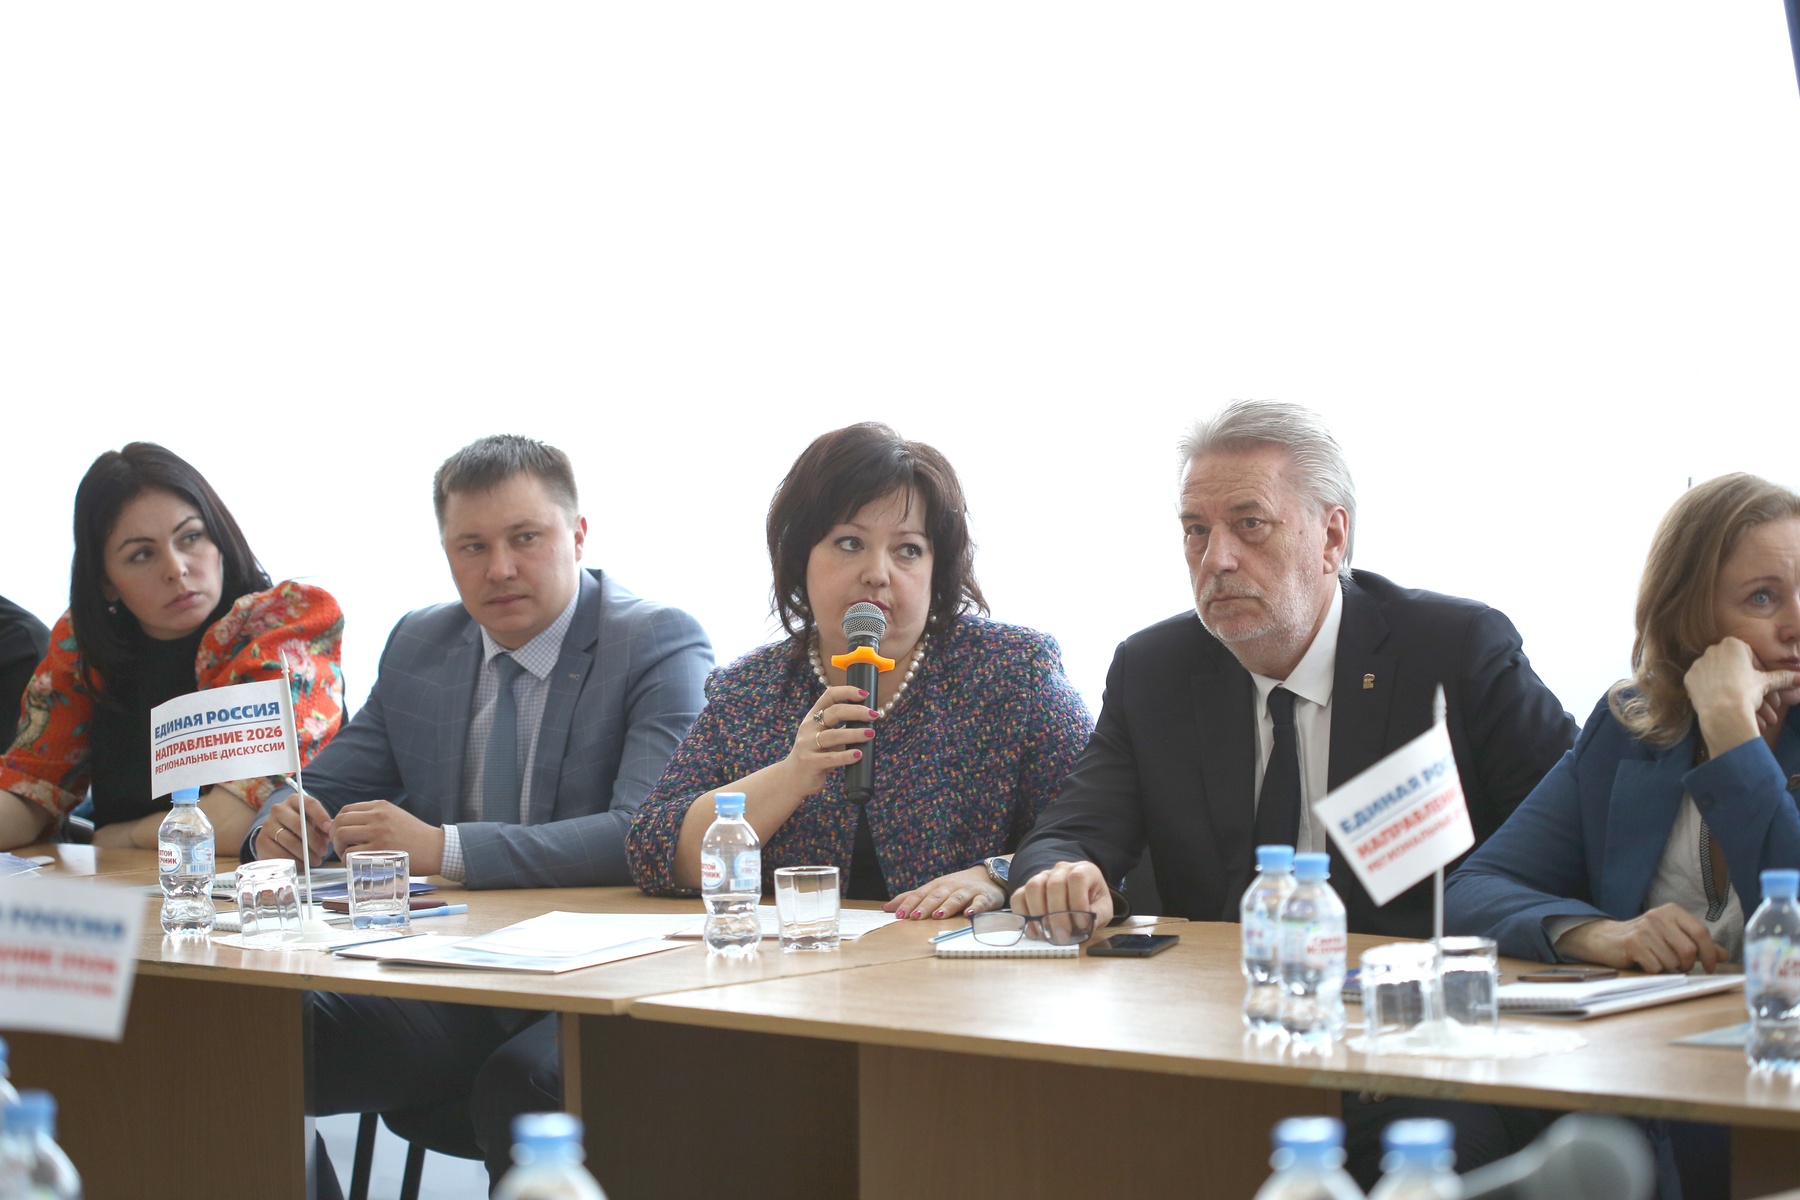  Андрей Турчак принял участие в работе дискуссионной площадки «Единая Россия. Направление 2026»